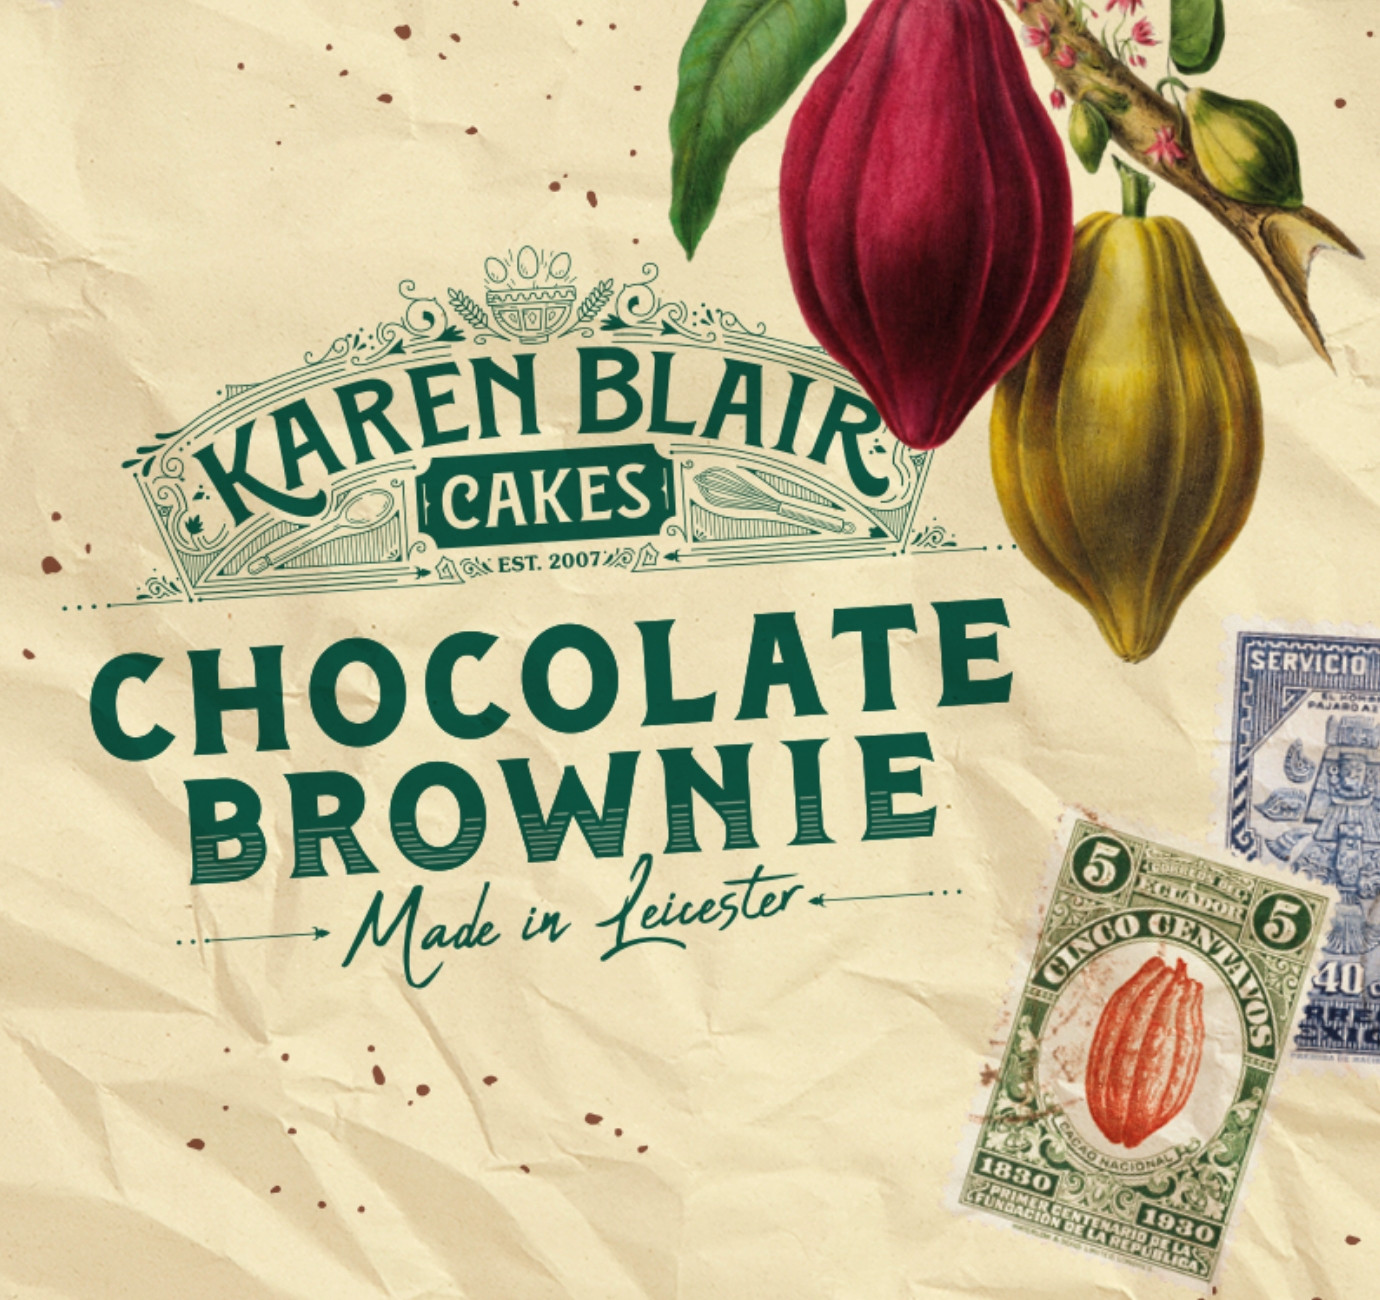 Karen Blair Cakes vintage packaging design by Root Studio